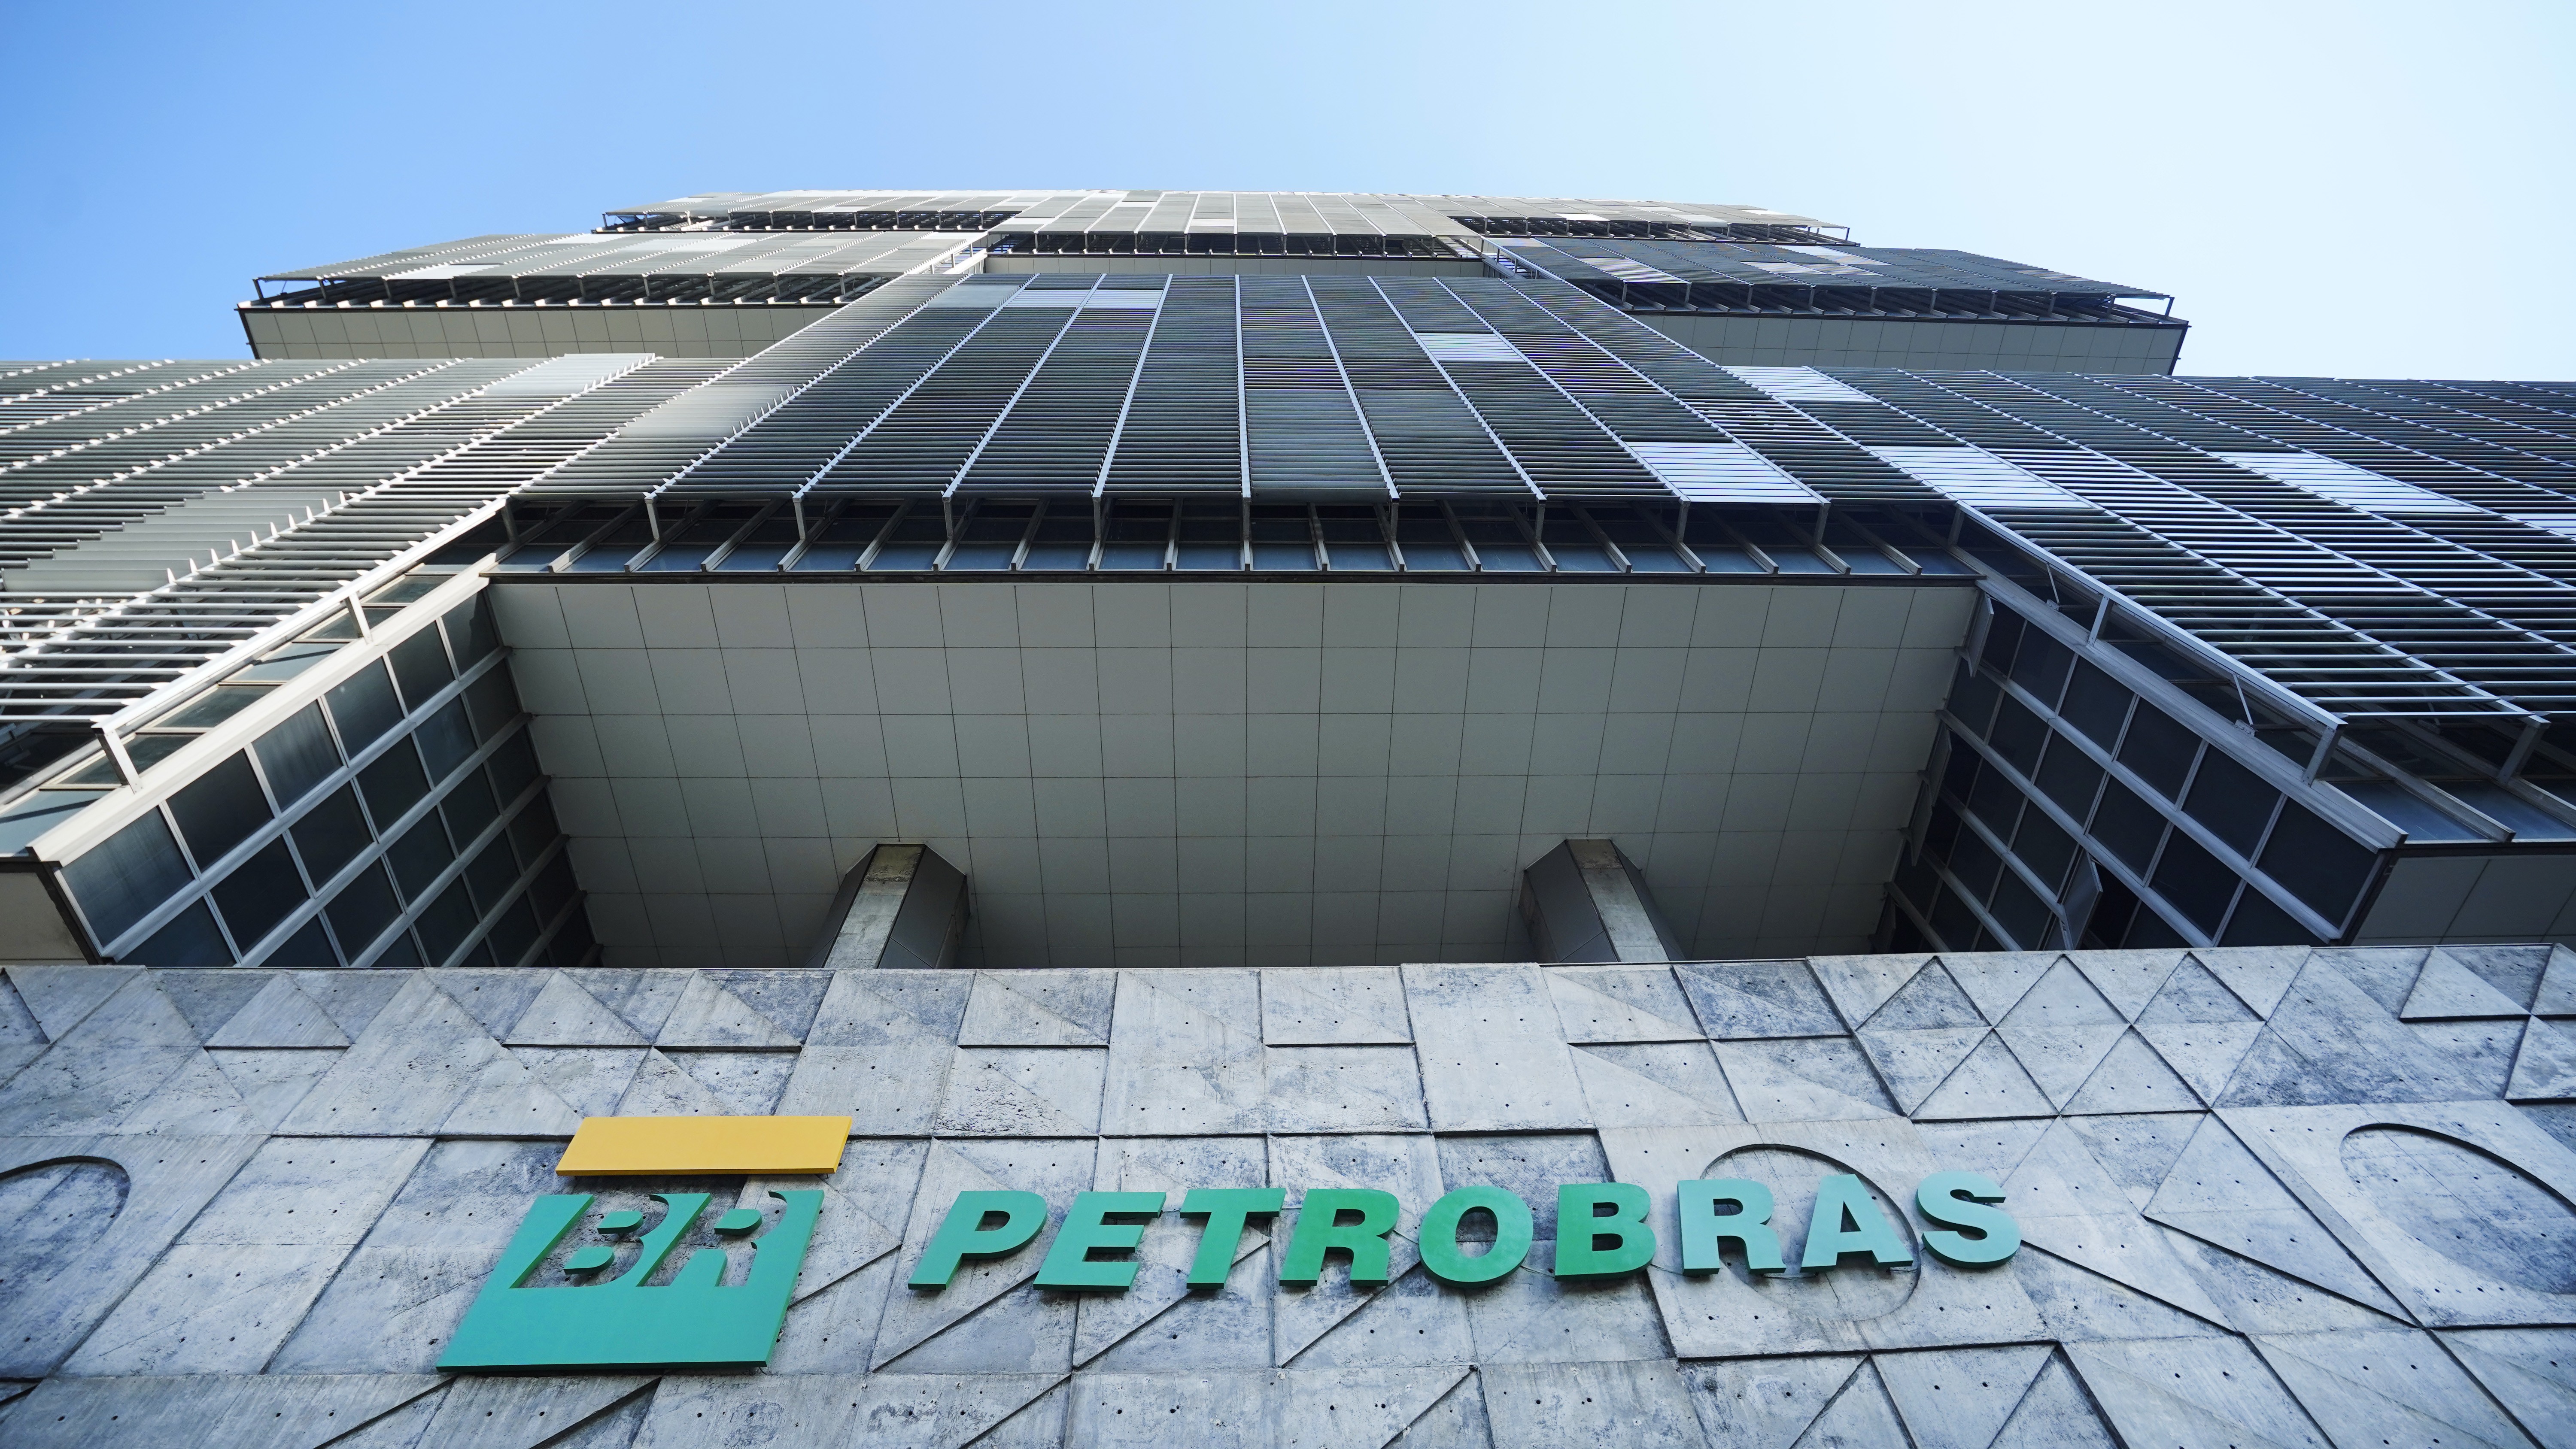 Petrobras anuncia redução do preço do gás natural para as distribuidoras